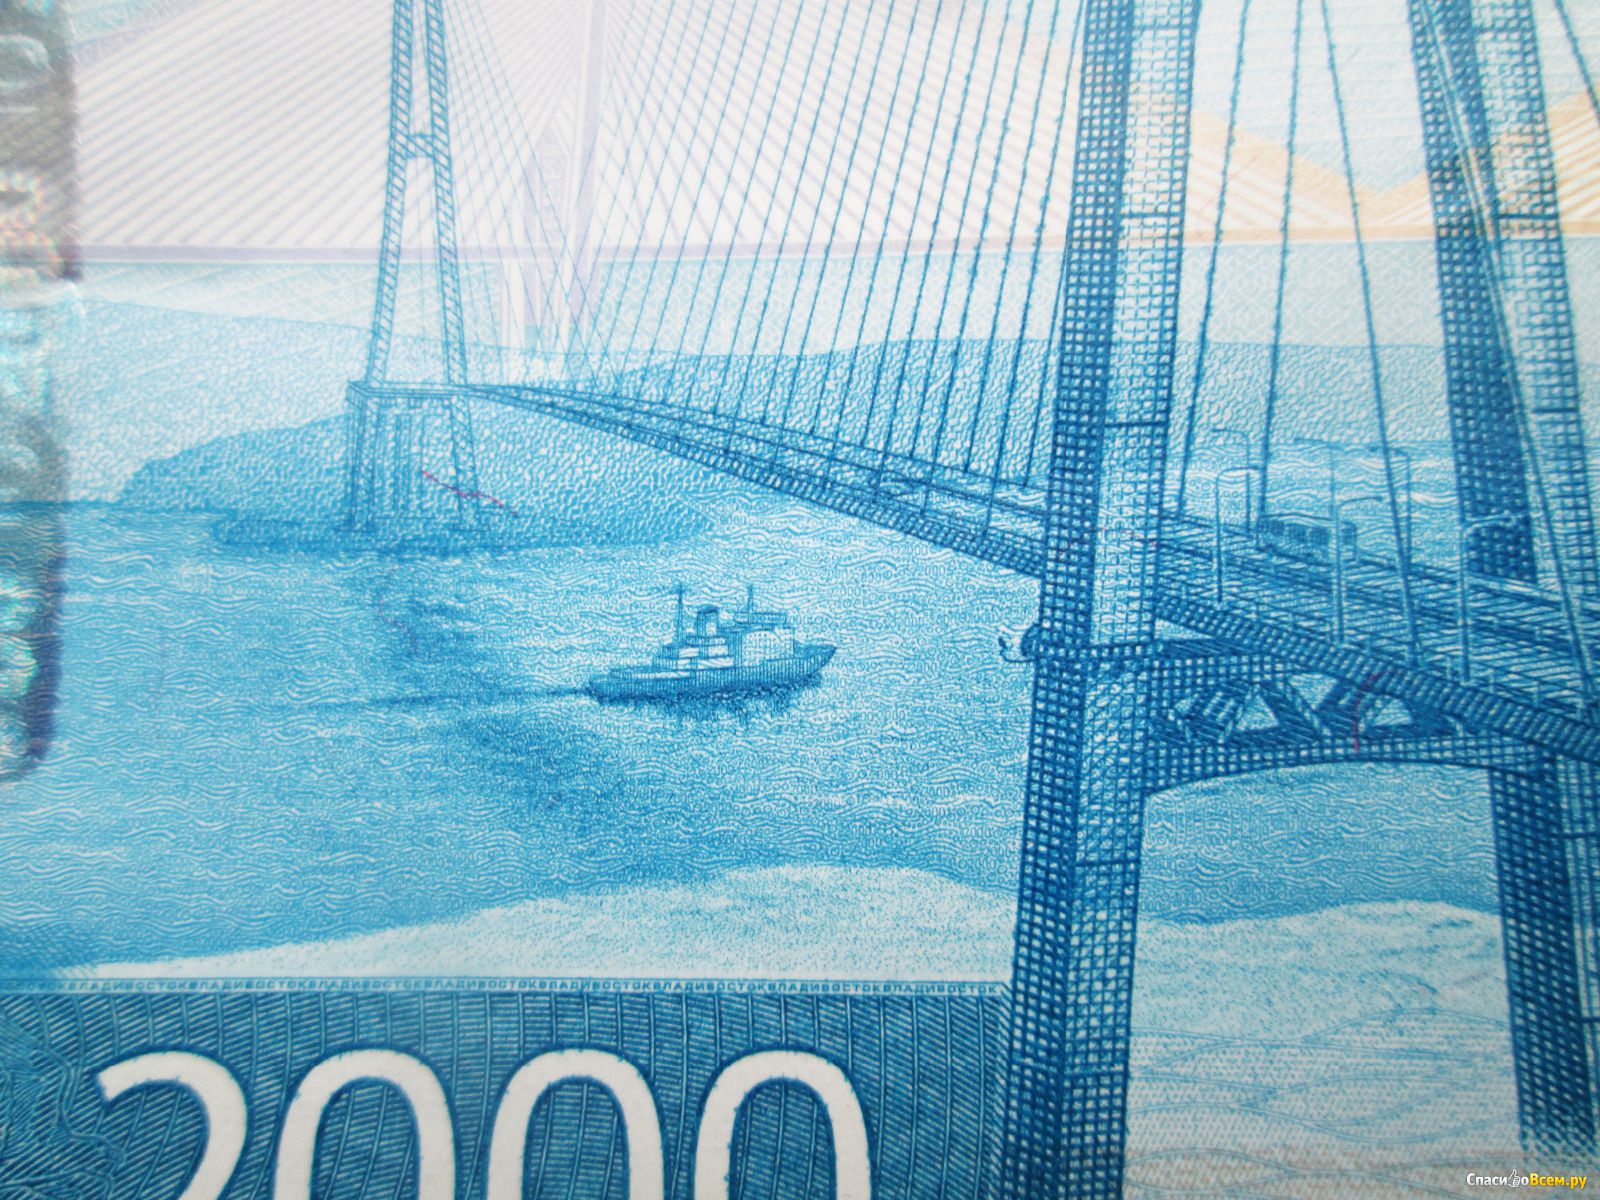 Мост на купюре. Владивосток 2000 купюра. Мост Владивосток 2000. 2000 Рублей Владивосток. Купюра 2000 рублей Владивосток.